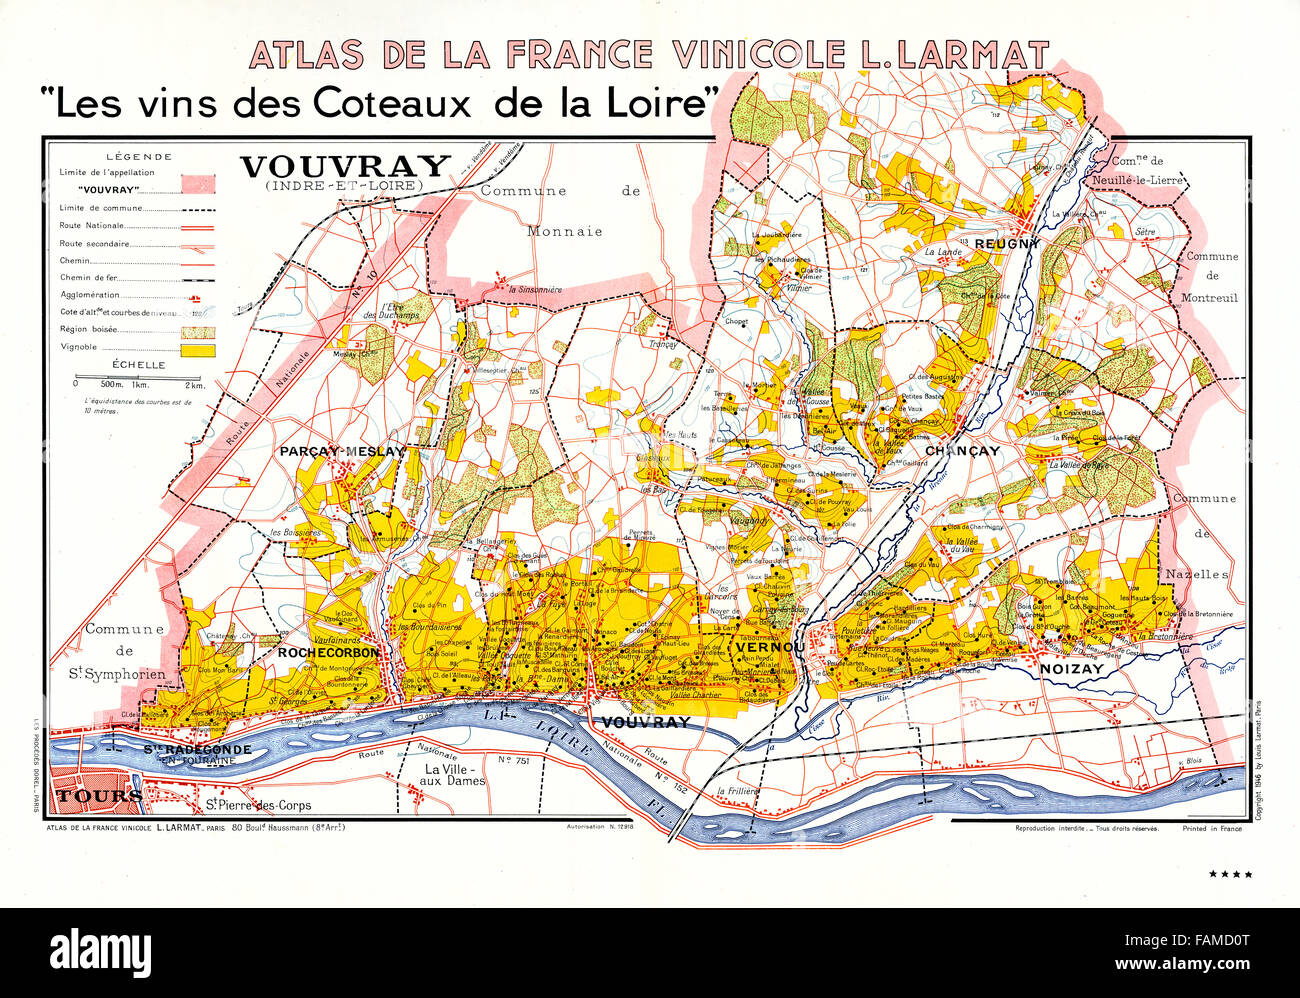 Le vignoble de Vouvray, Atlas des vins de la vallée de la Loire montrant les vignes, les villages et les villes de la région de vin blanc au-dessus de tours le long de la rivière Banque D'Images